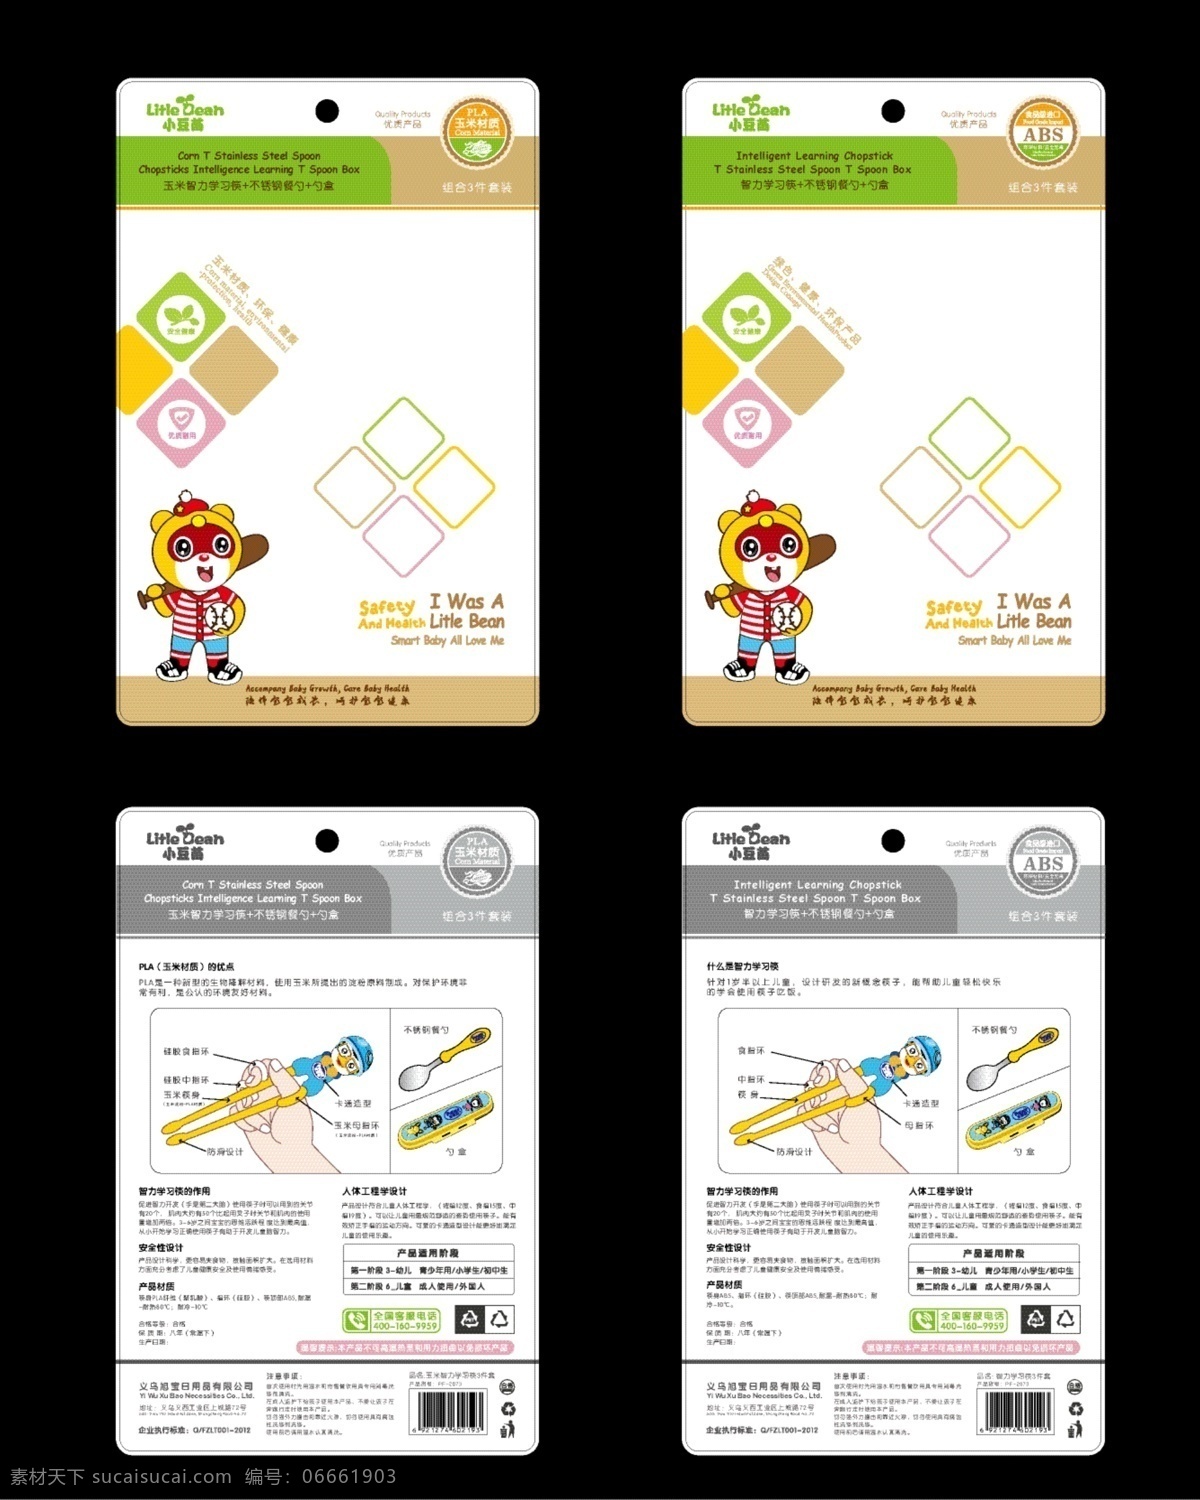 产品包装设计 学习筷盒装 儿童产品包装 纸卡设计 吊卡设计 品牌包装 印刷包装 平面设计 包装设计